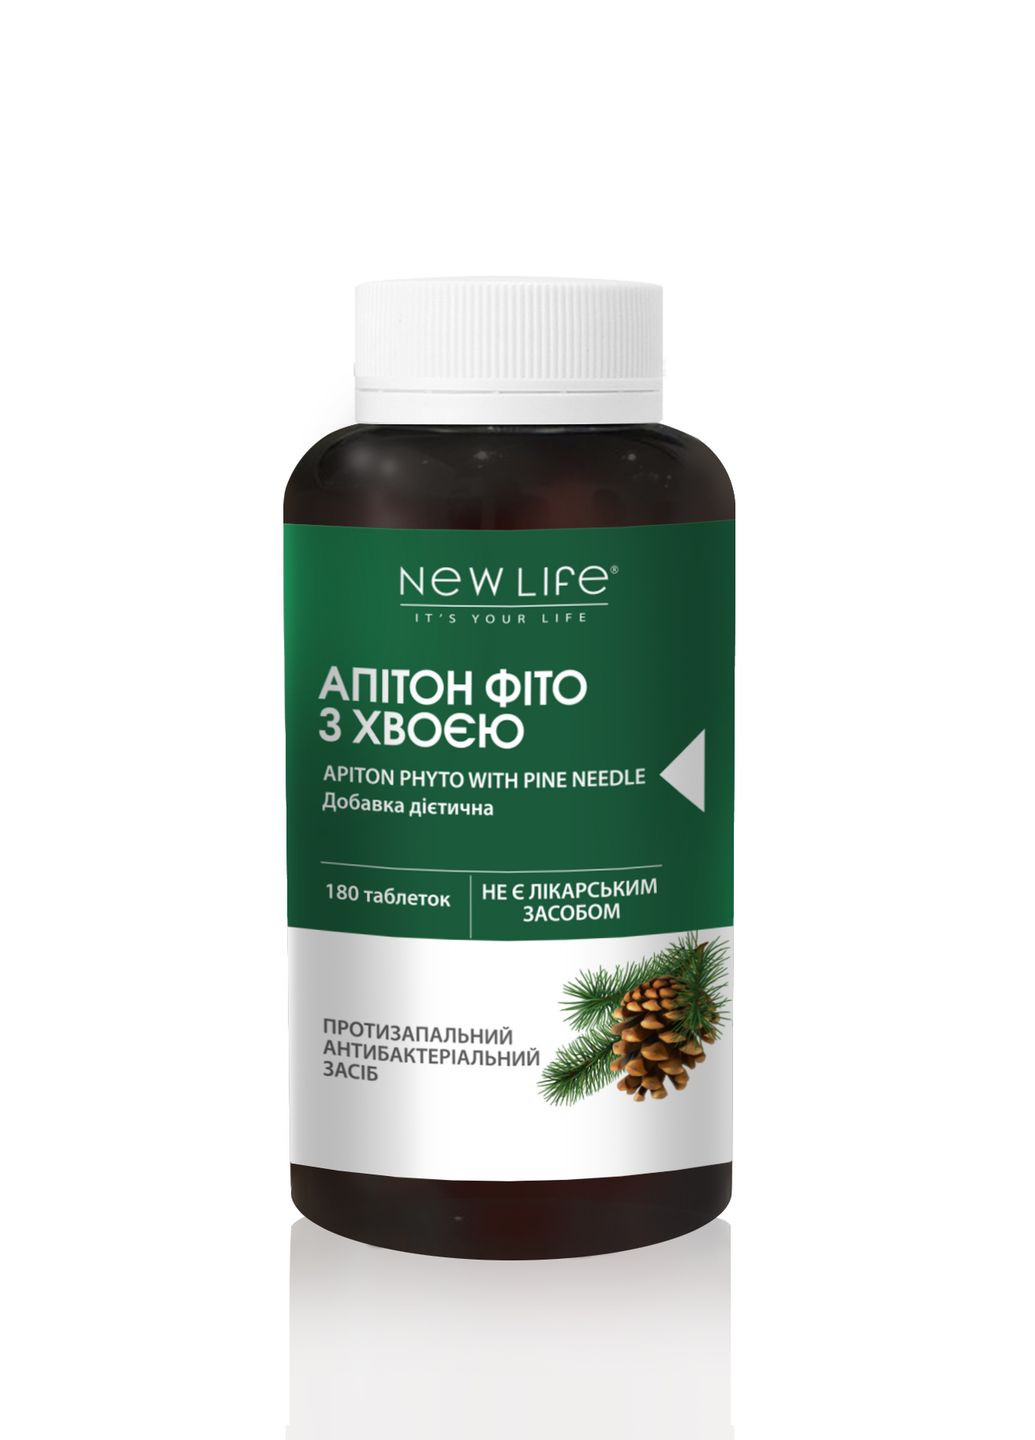 Дієтична добавка Апітон фіто з хвоєю - протизапальний, антибактеріальний засіб, 180 таблеток в баночці New LIFE (277369688)